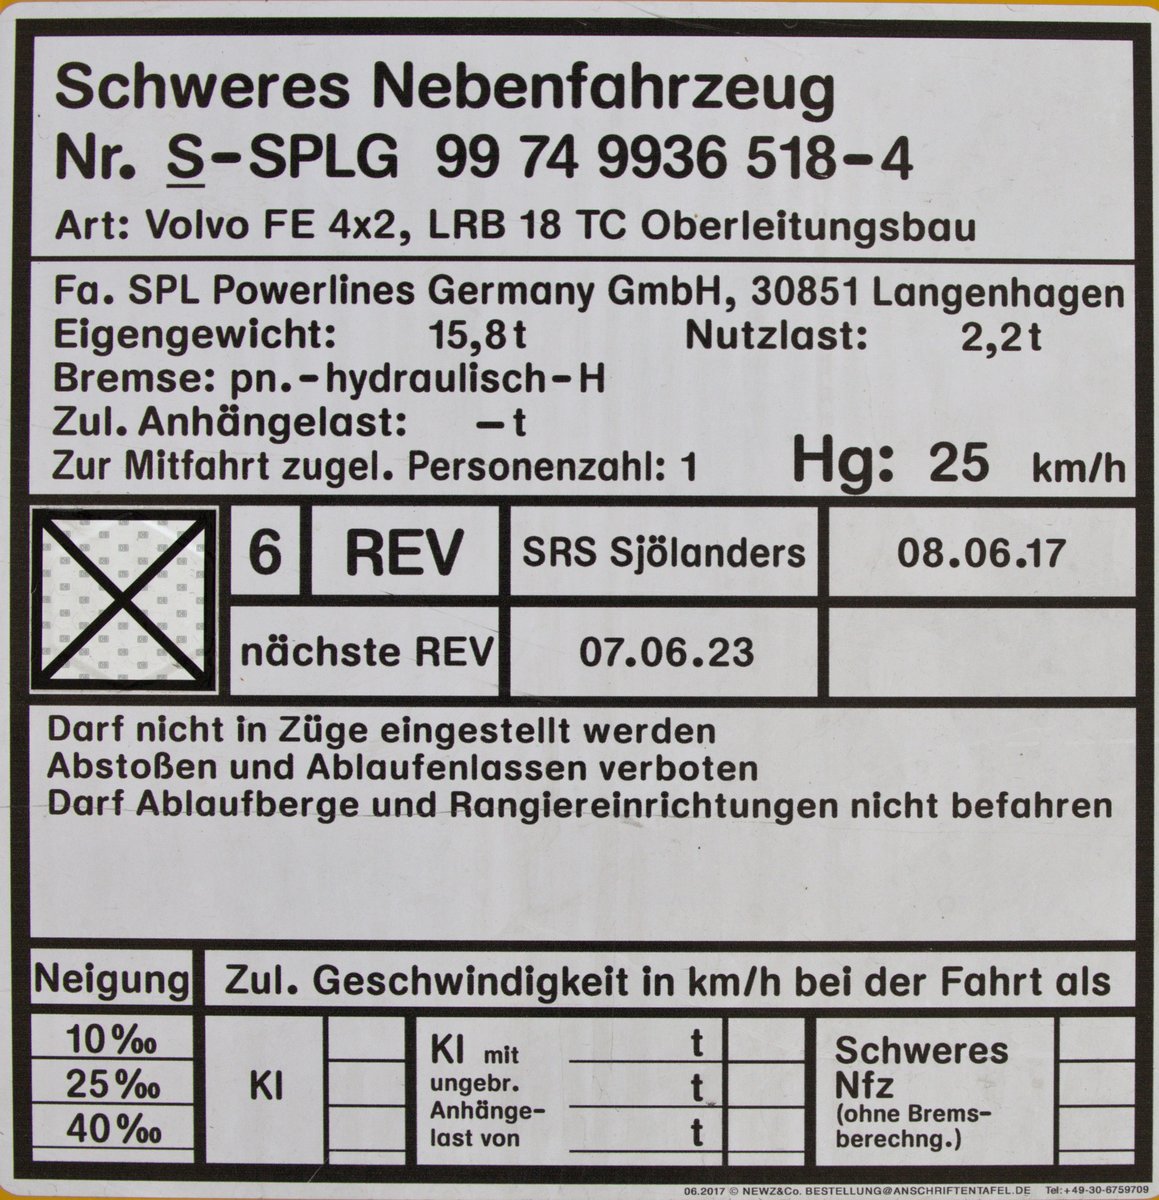 Gattungskennzeichen am VOLVO Zweiwegefahrzeug. 
S-SPLG 99 74 9936 518-8, ein Fahrzeug mit Stromabnehmer und Arbeitsbühne.
01.05.2021 09:58 Uhr. Coswig (Sachsen)